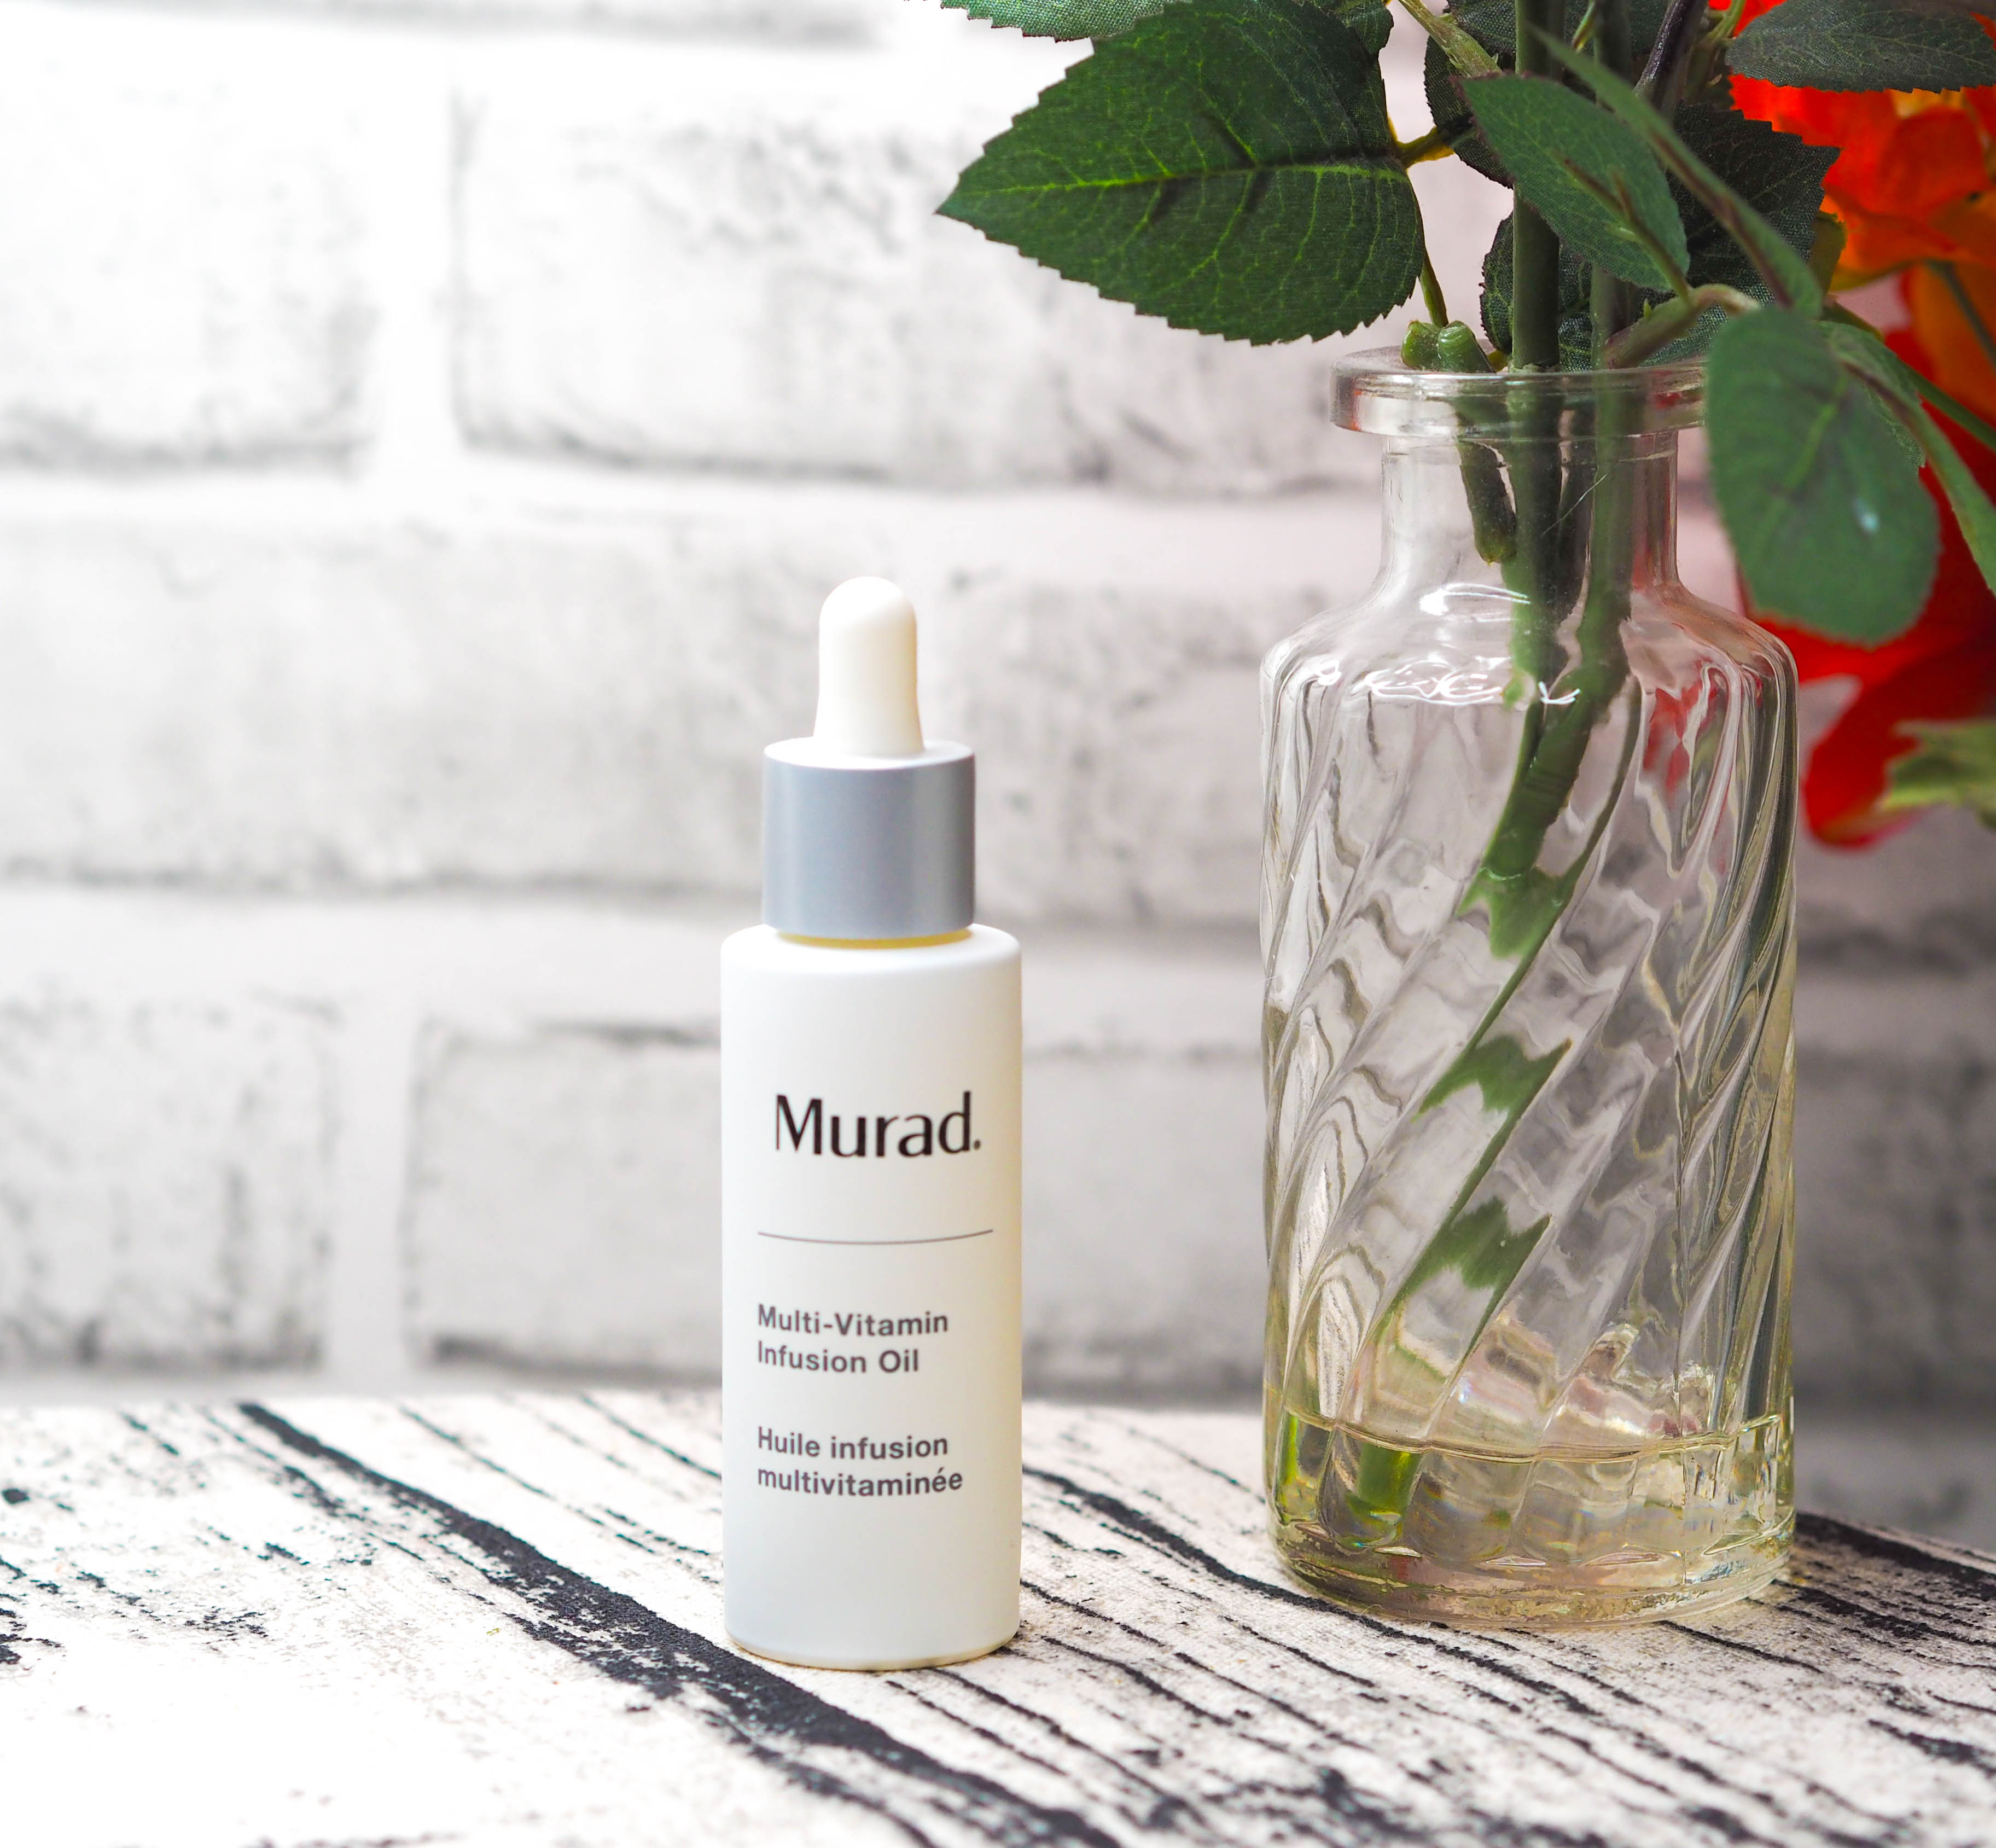 Murad Multi-Vitamin Infusion Oil Review